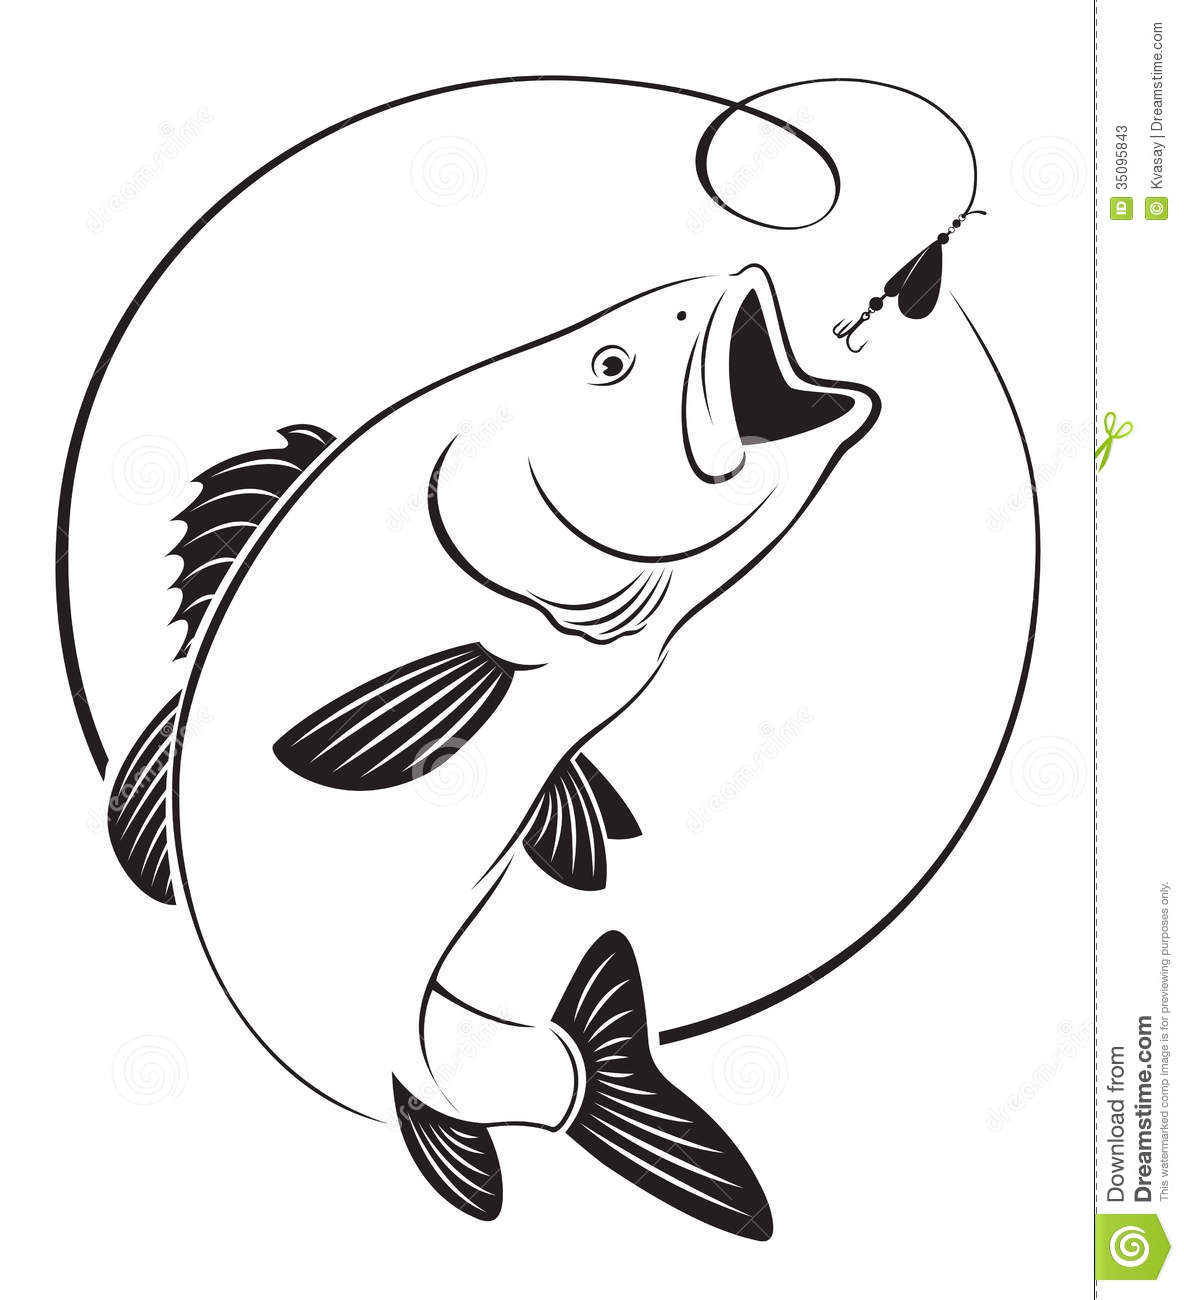 Fish bass. Fish bass. Bass Fi - Bass Fish Clipart